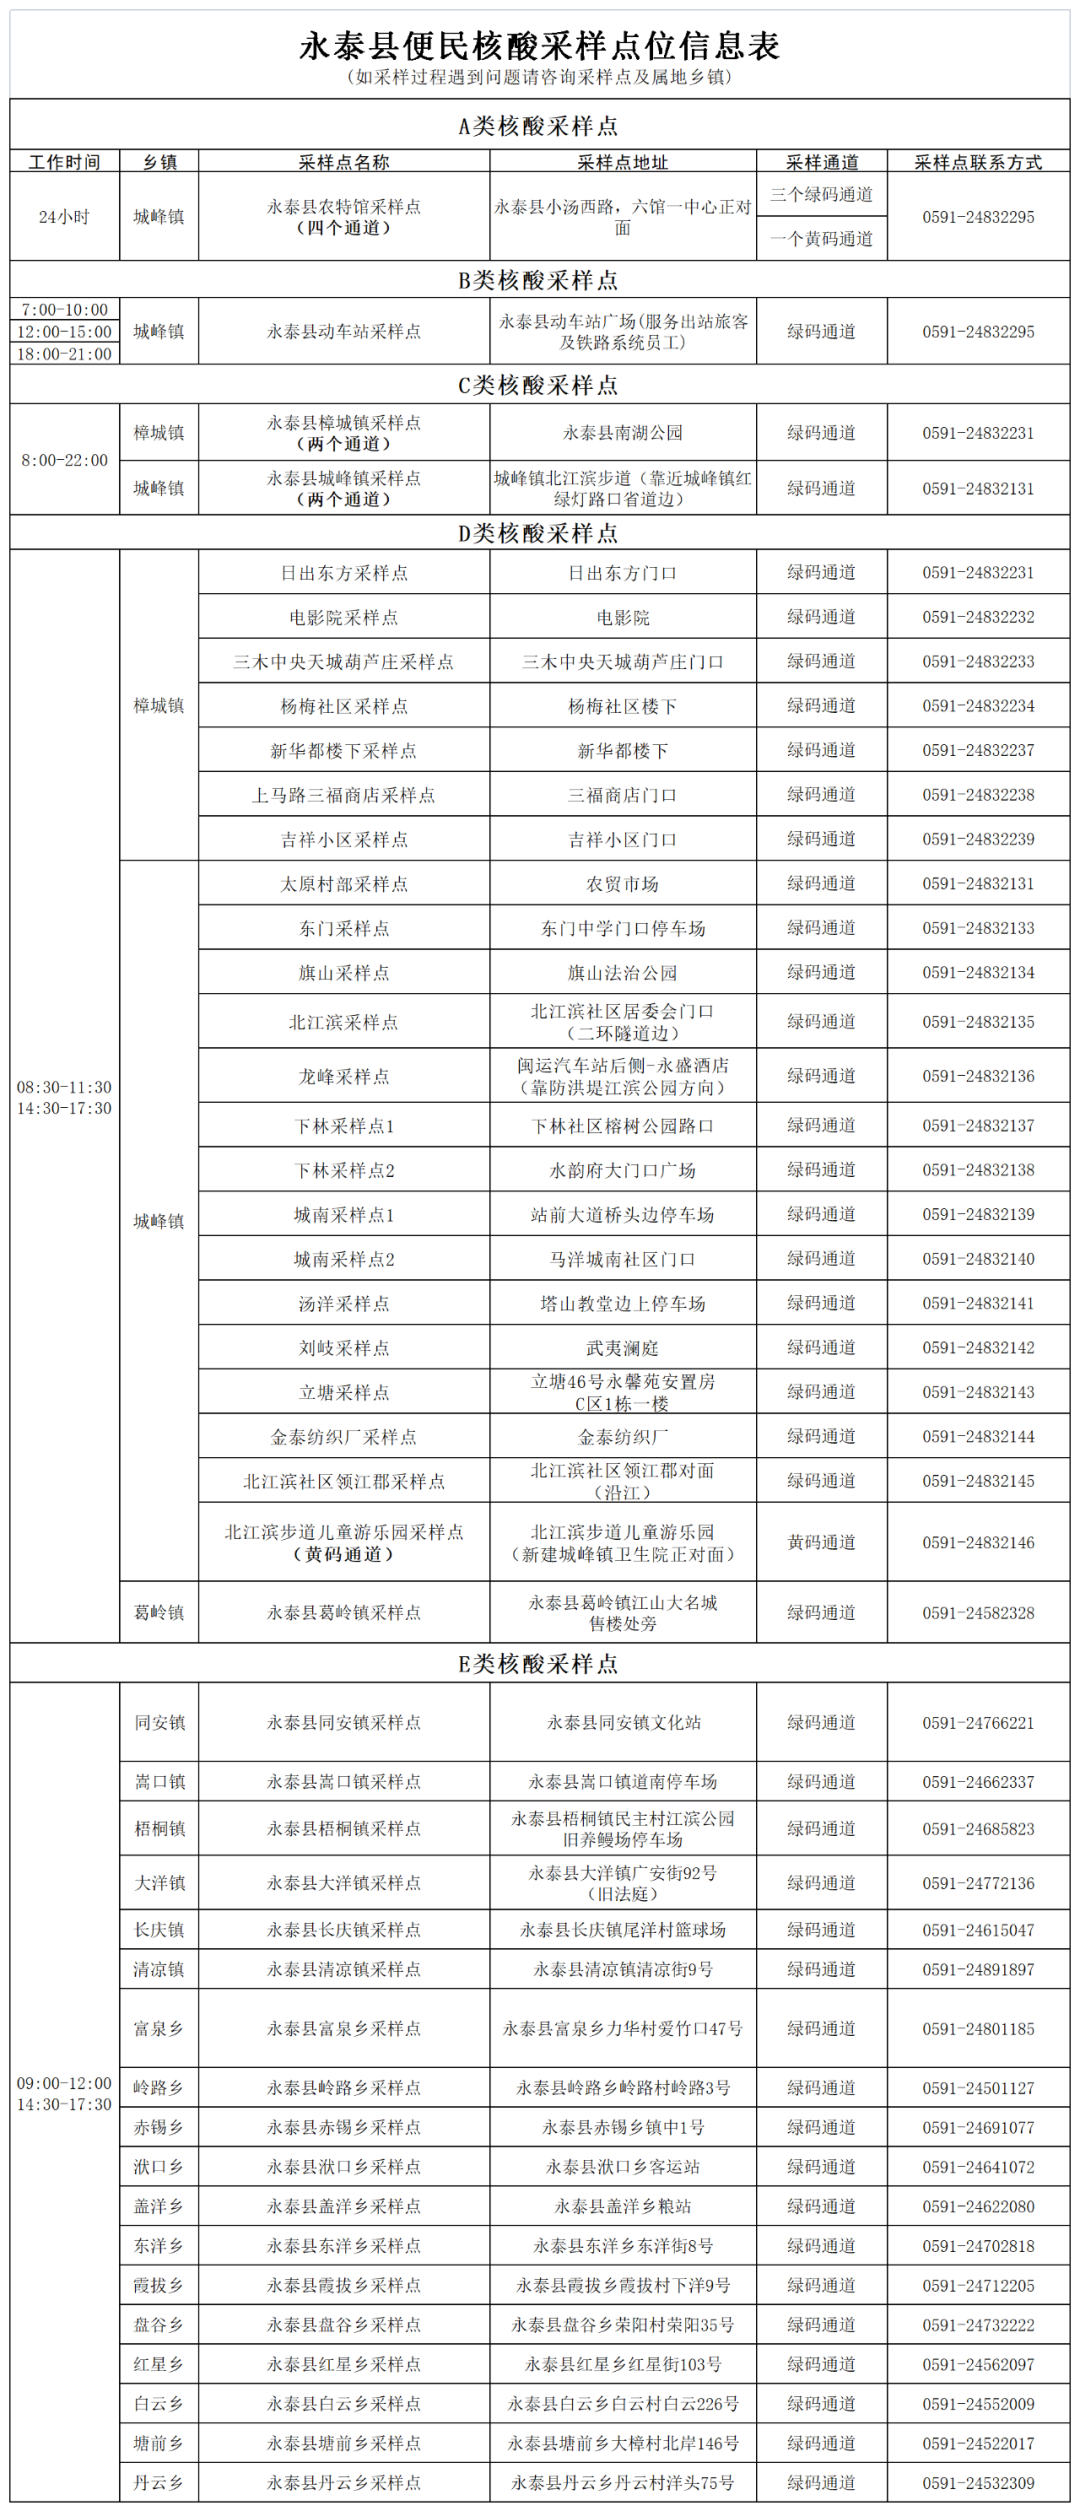 永泰县新冠肺炎防控工作指挥部发布第16号通告